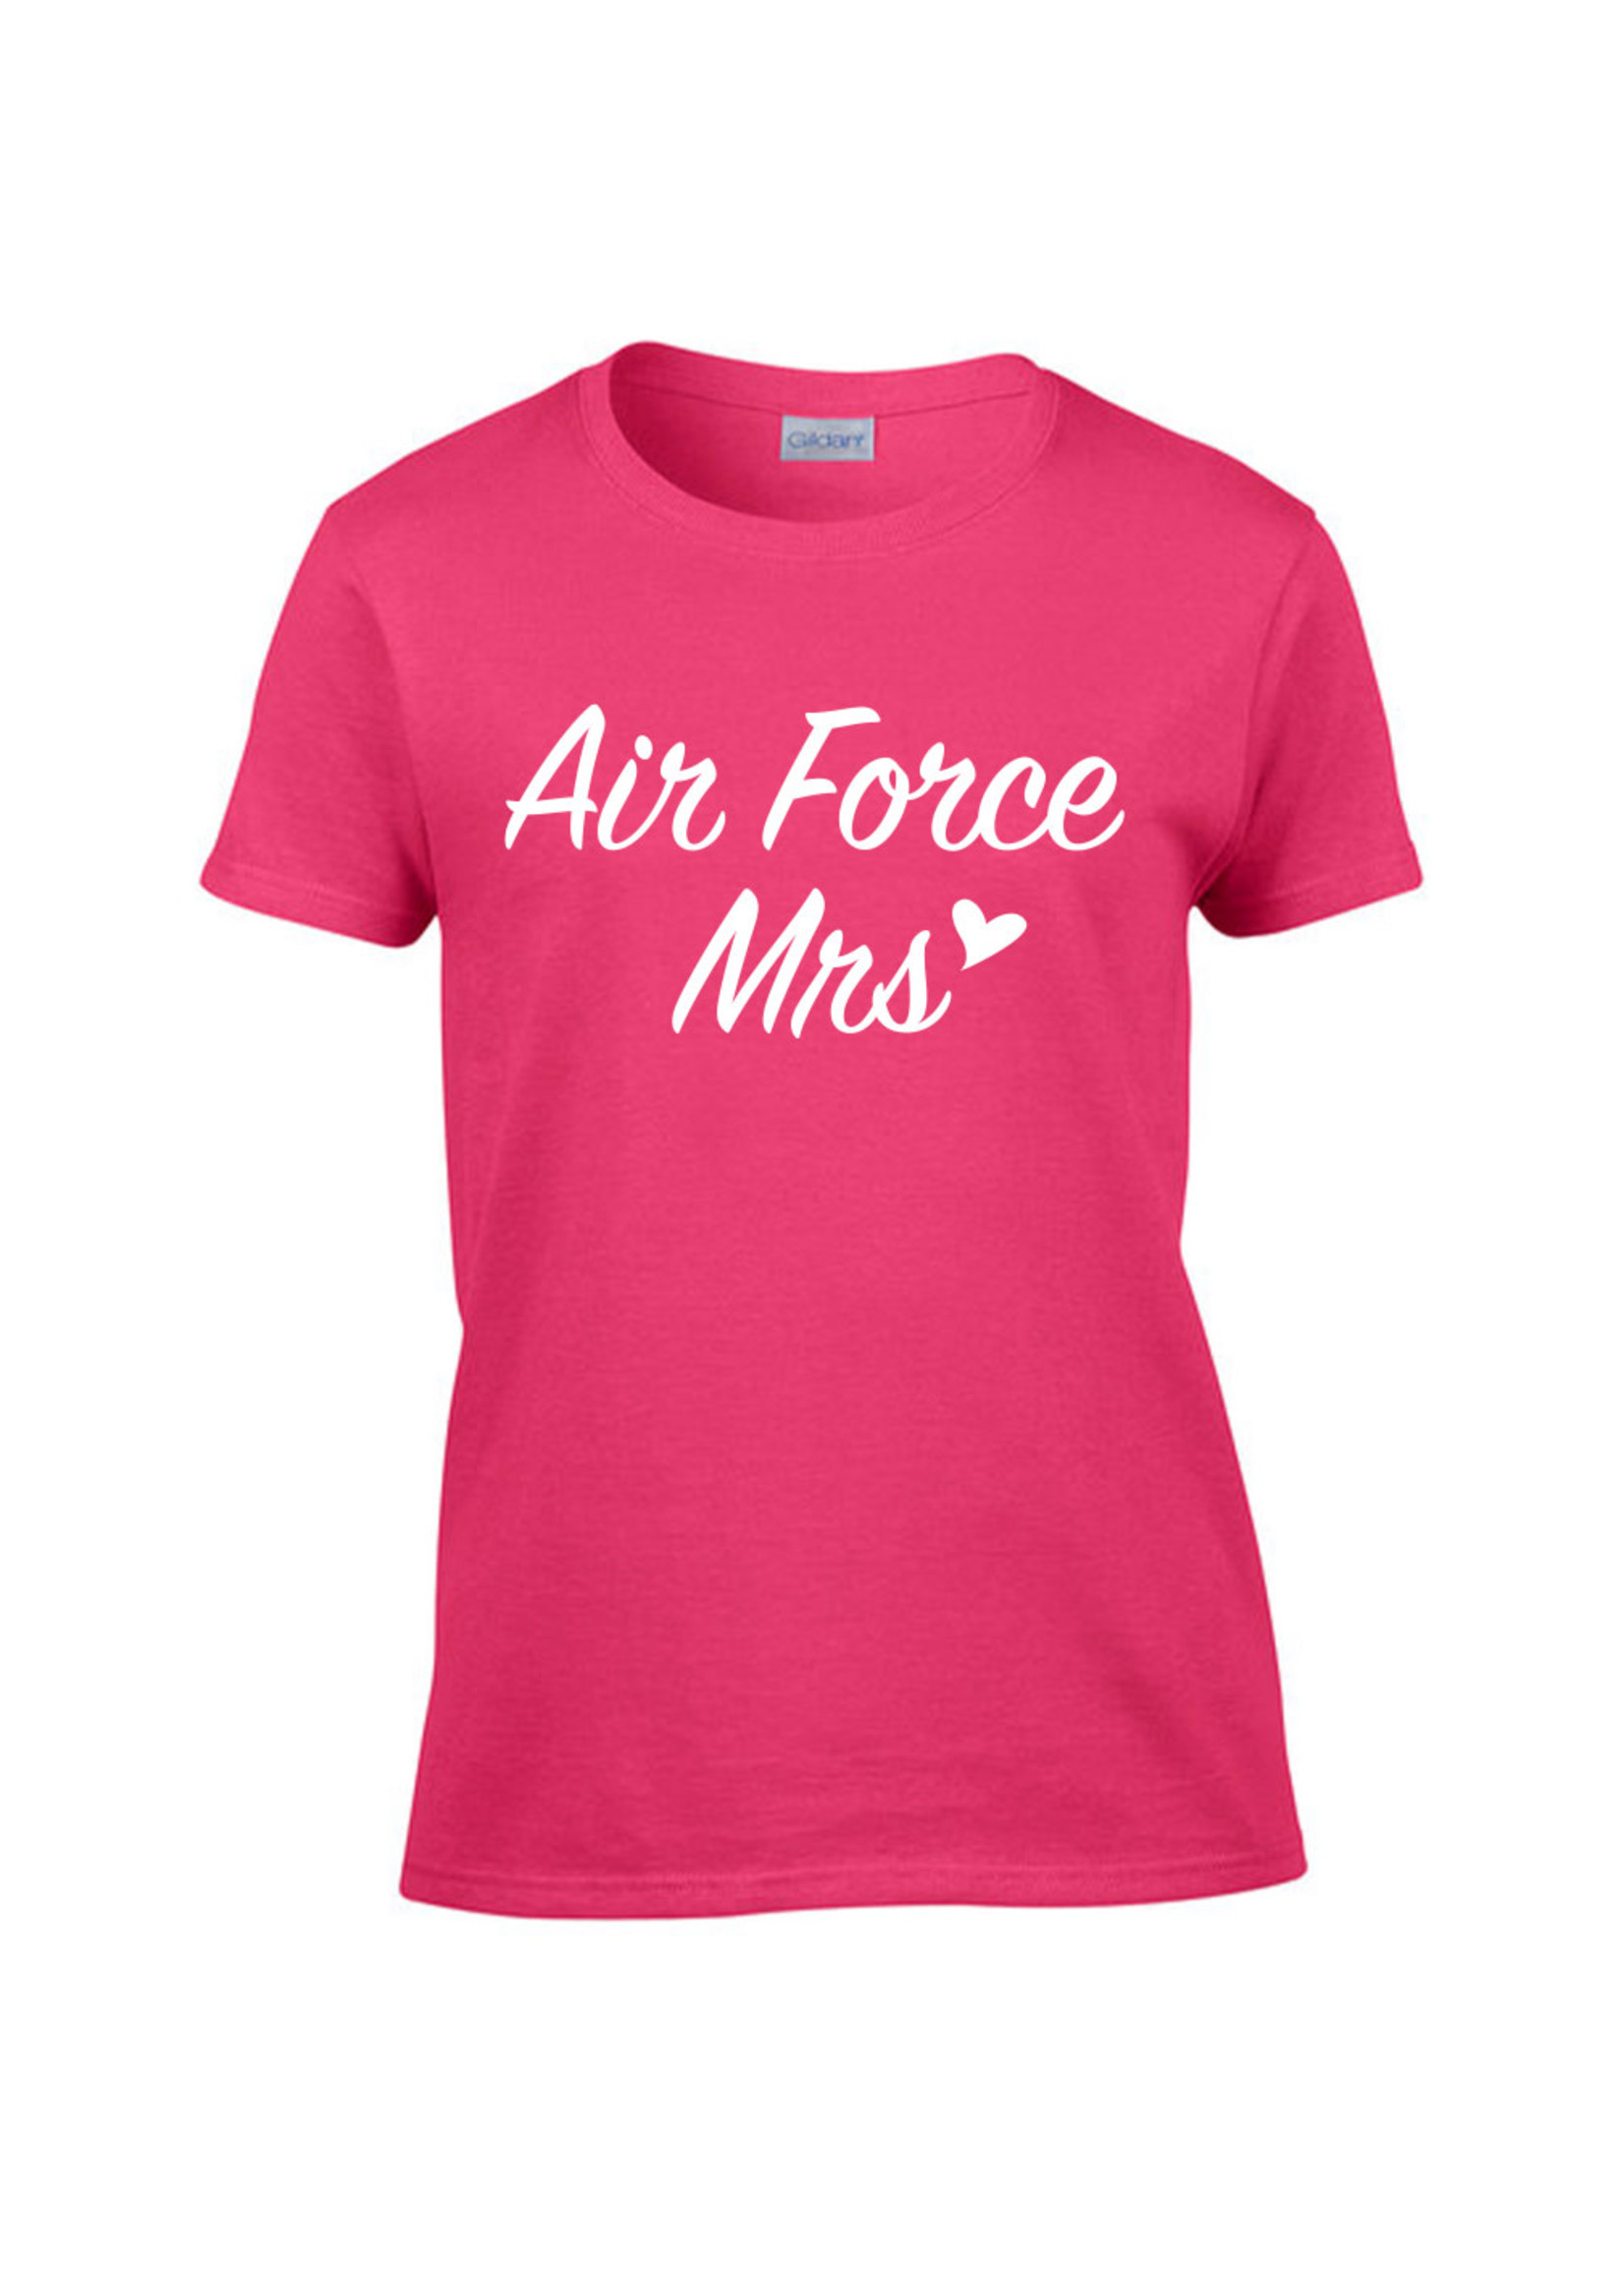 #14 - Air Force Mrs.